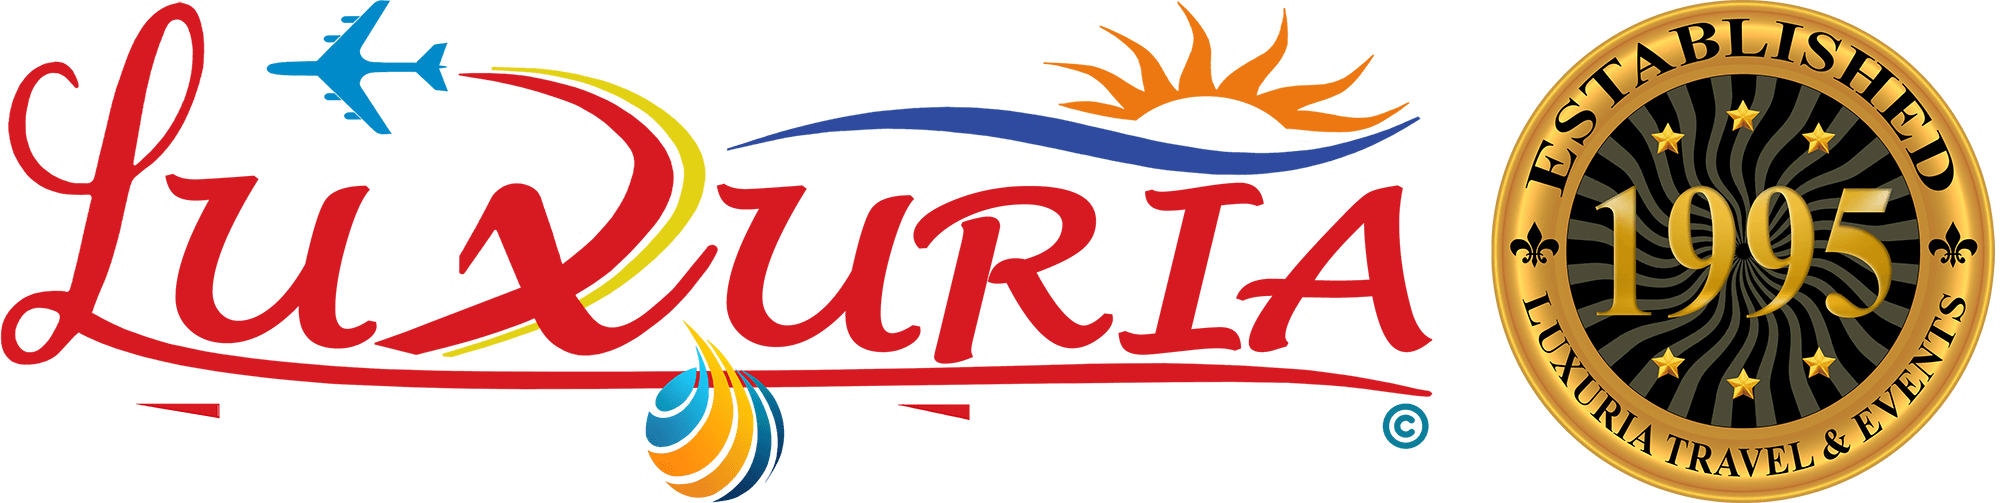 Luxuria Travel & Events | مطار دبي الأول عالمياً 2018 للسنة الرابعة 89.1 مليون مسافر ⋆ Luxuria Travel & Events